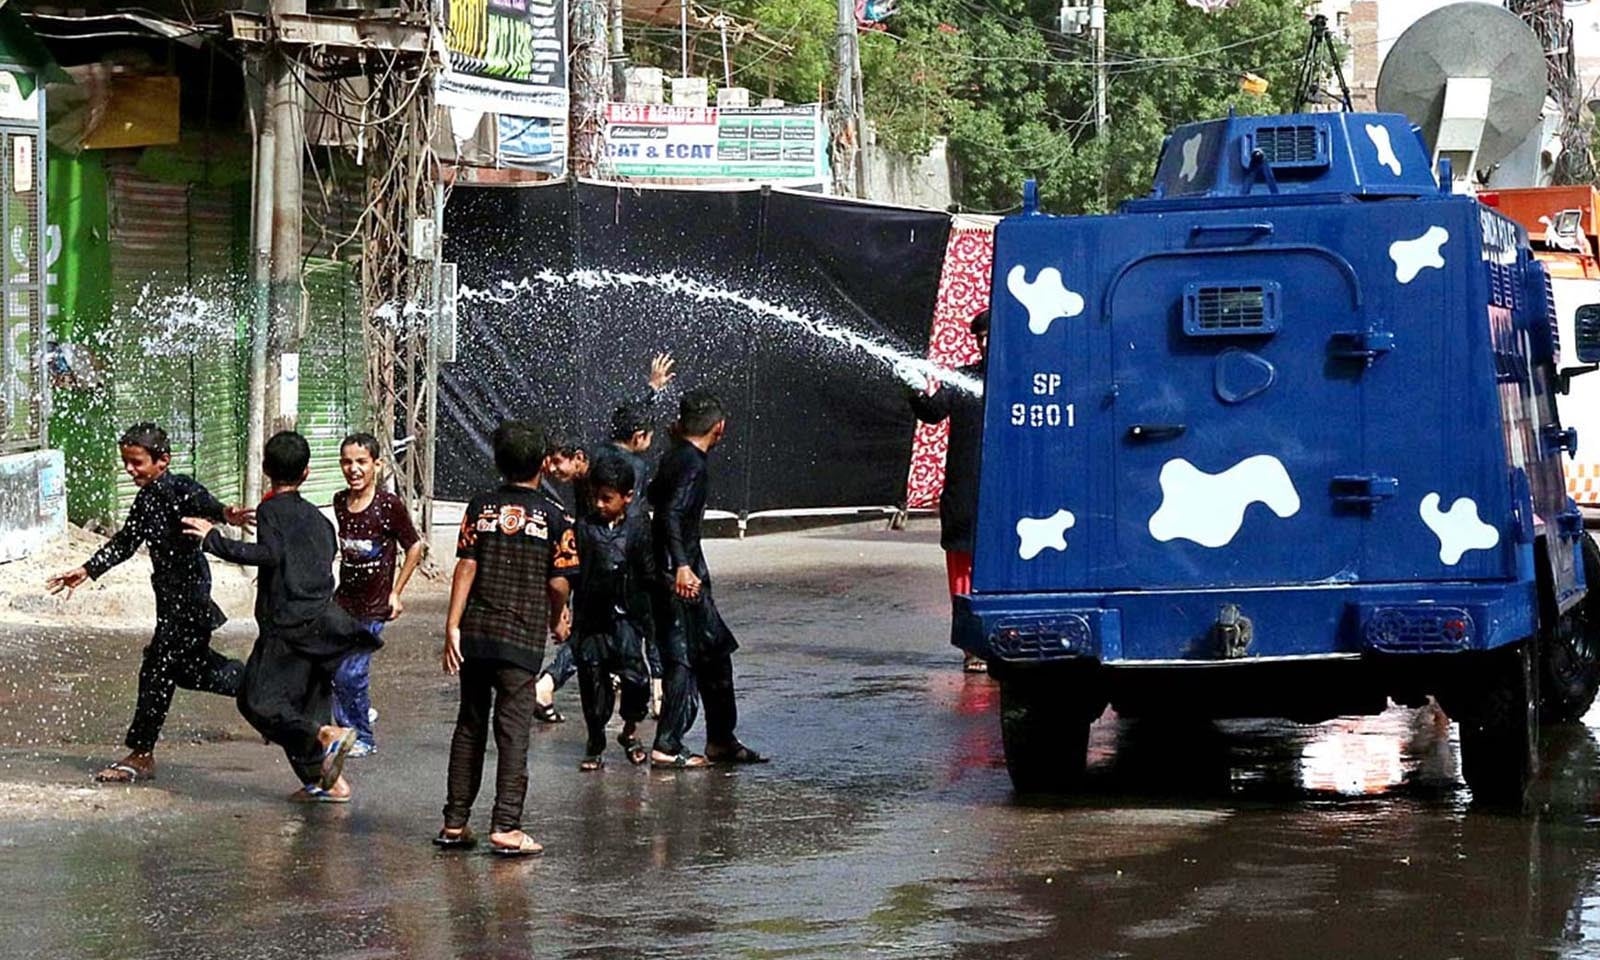 حیدرآباد میں گرمی کی شدت میں کمی کے لیے جلوس کے شرکا پر پانی کا چھڑکاؤ کیا گیا — فوٹو: اے پی پی